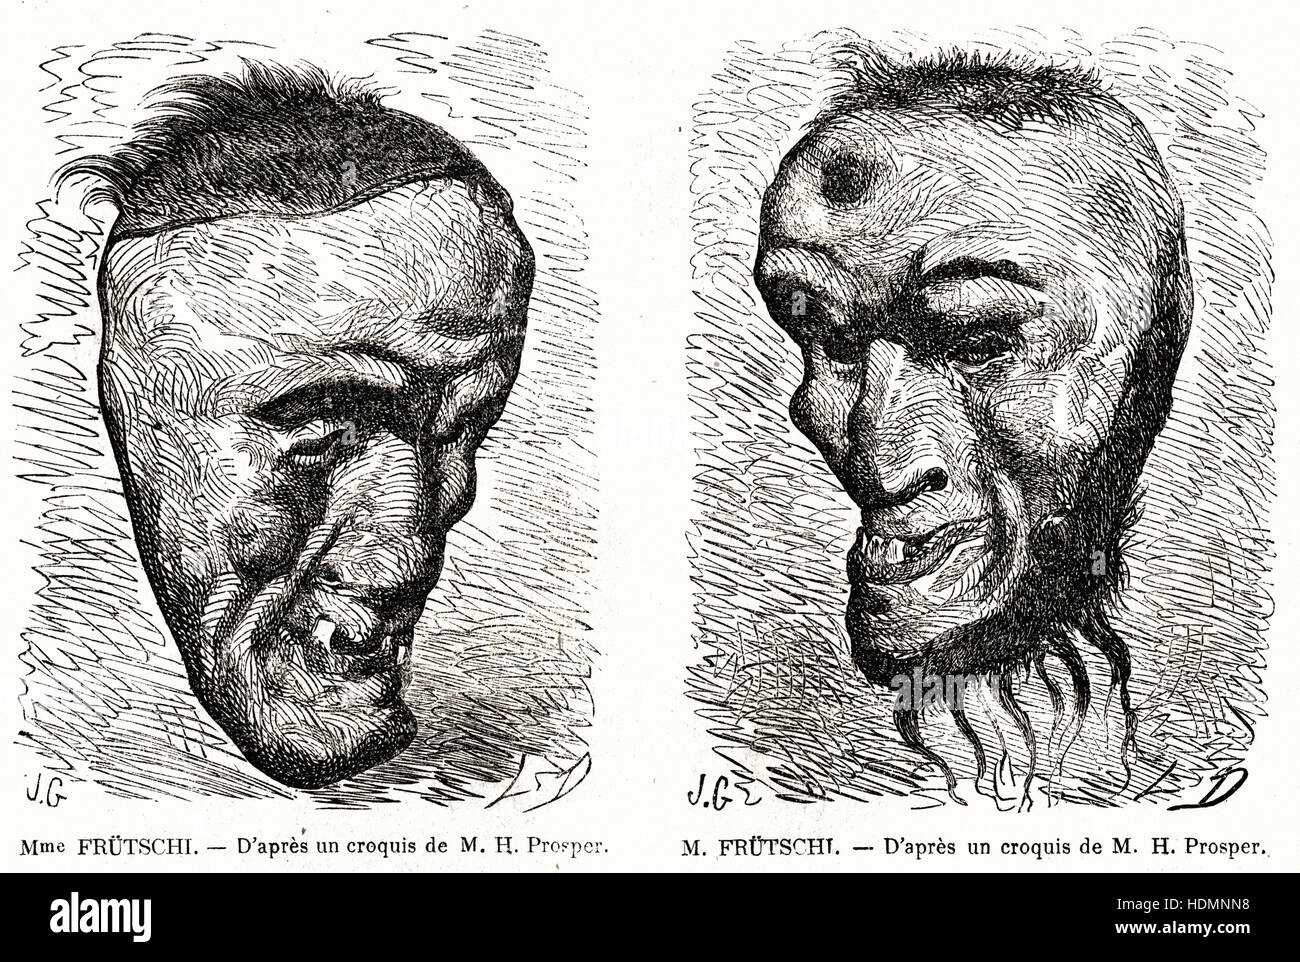 Ilustración de 1862 grabados máscaras de la Sra. y el Sr. Frütschi Foto de stock